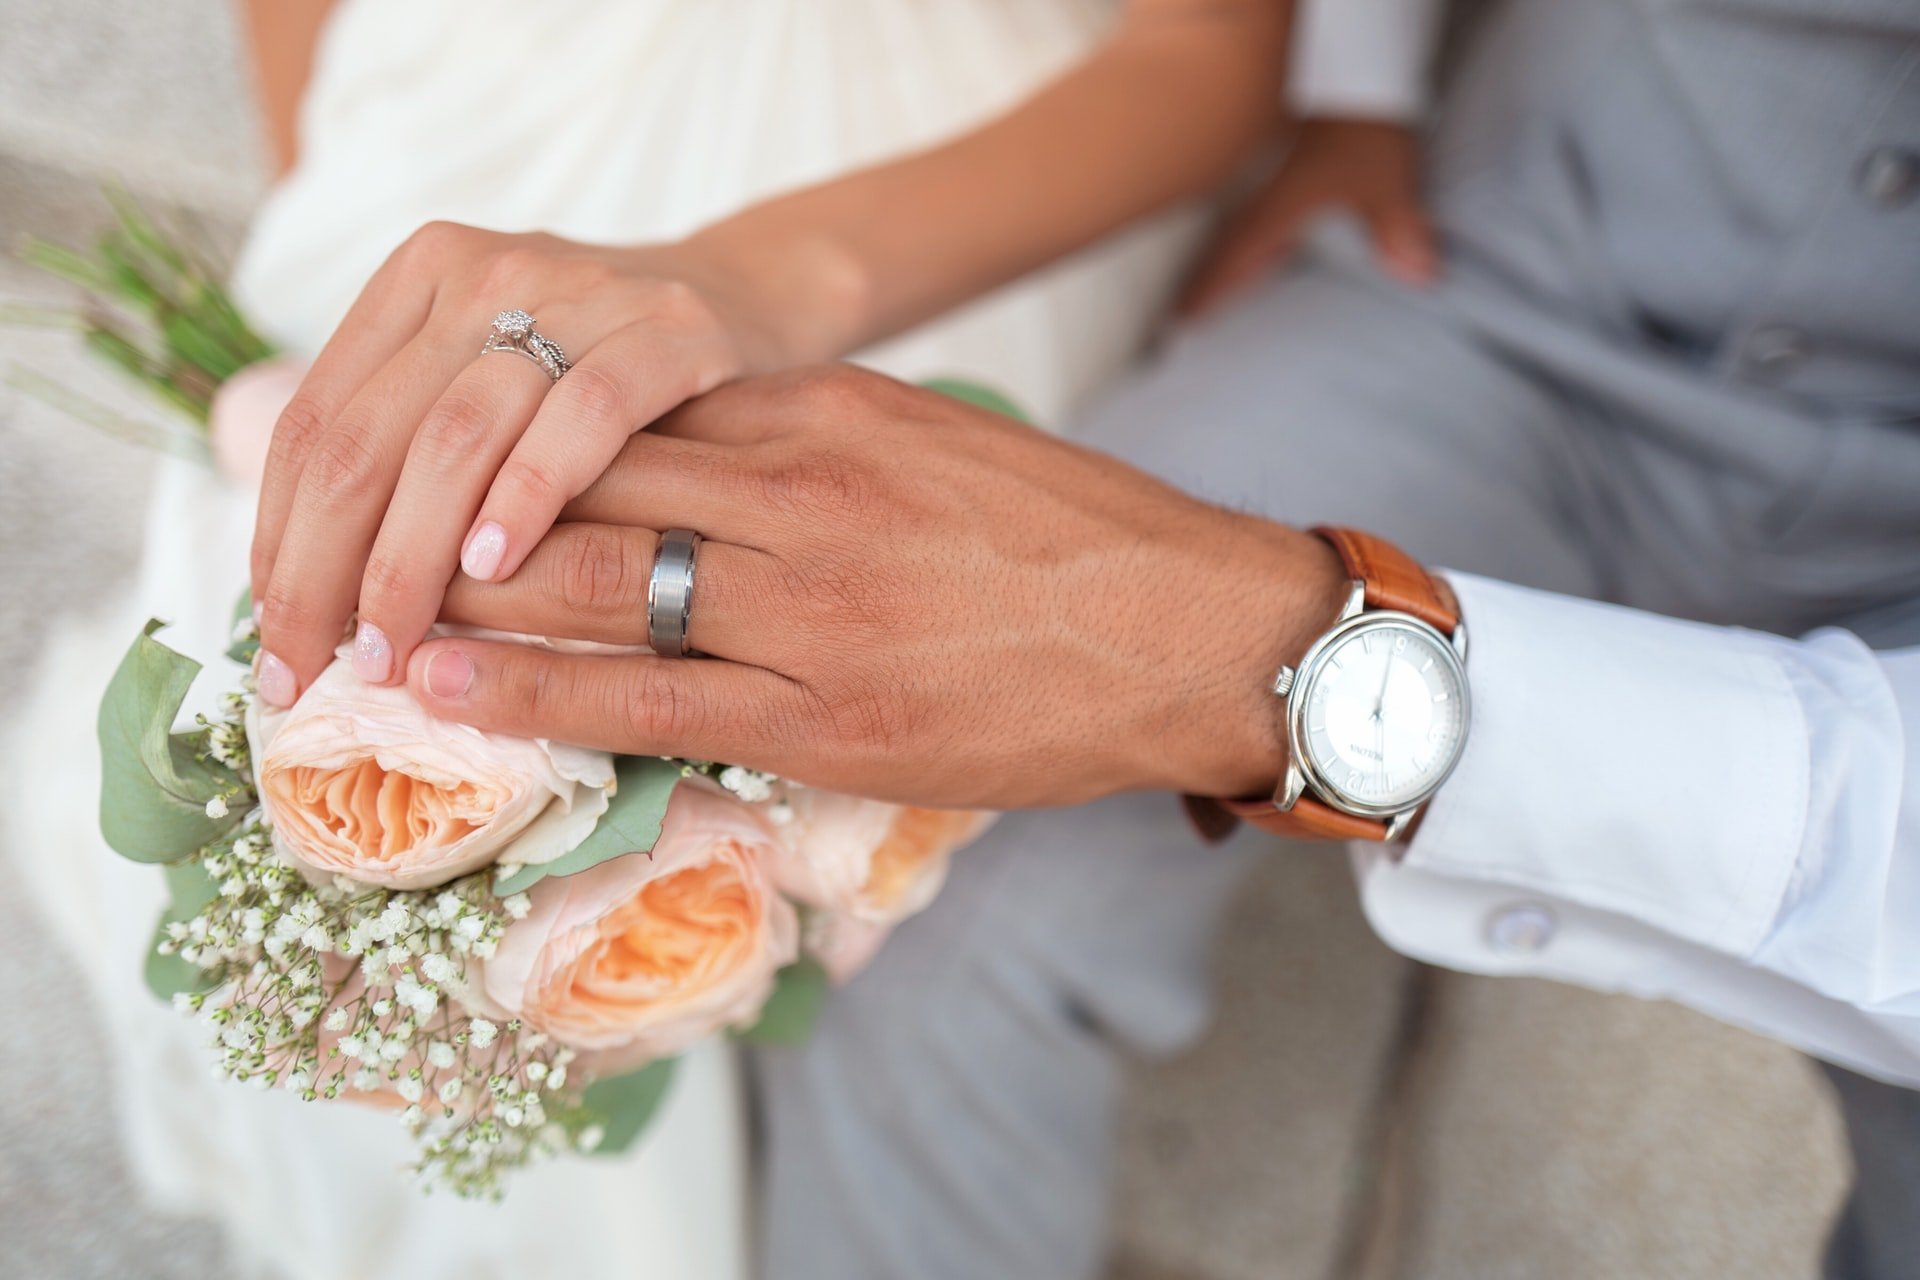 OP heiratete ihren Mann drei Jahre nachdem sie ihn kennengelernt hatte | Quelle: Unsplash